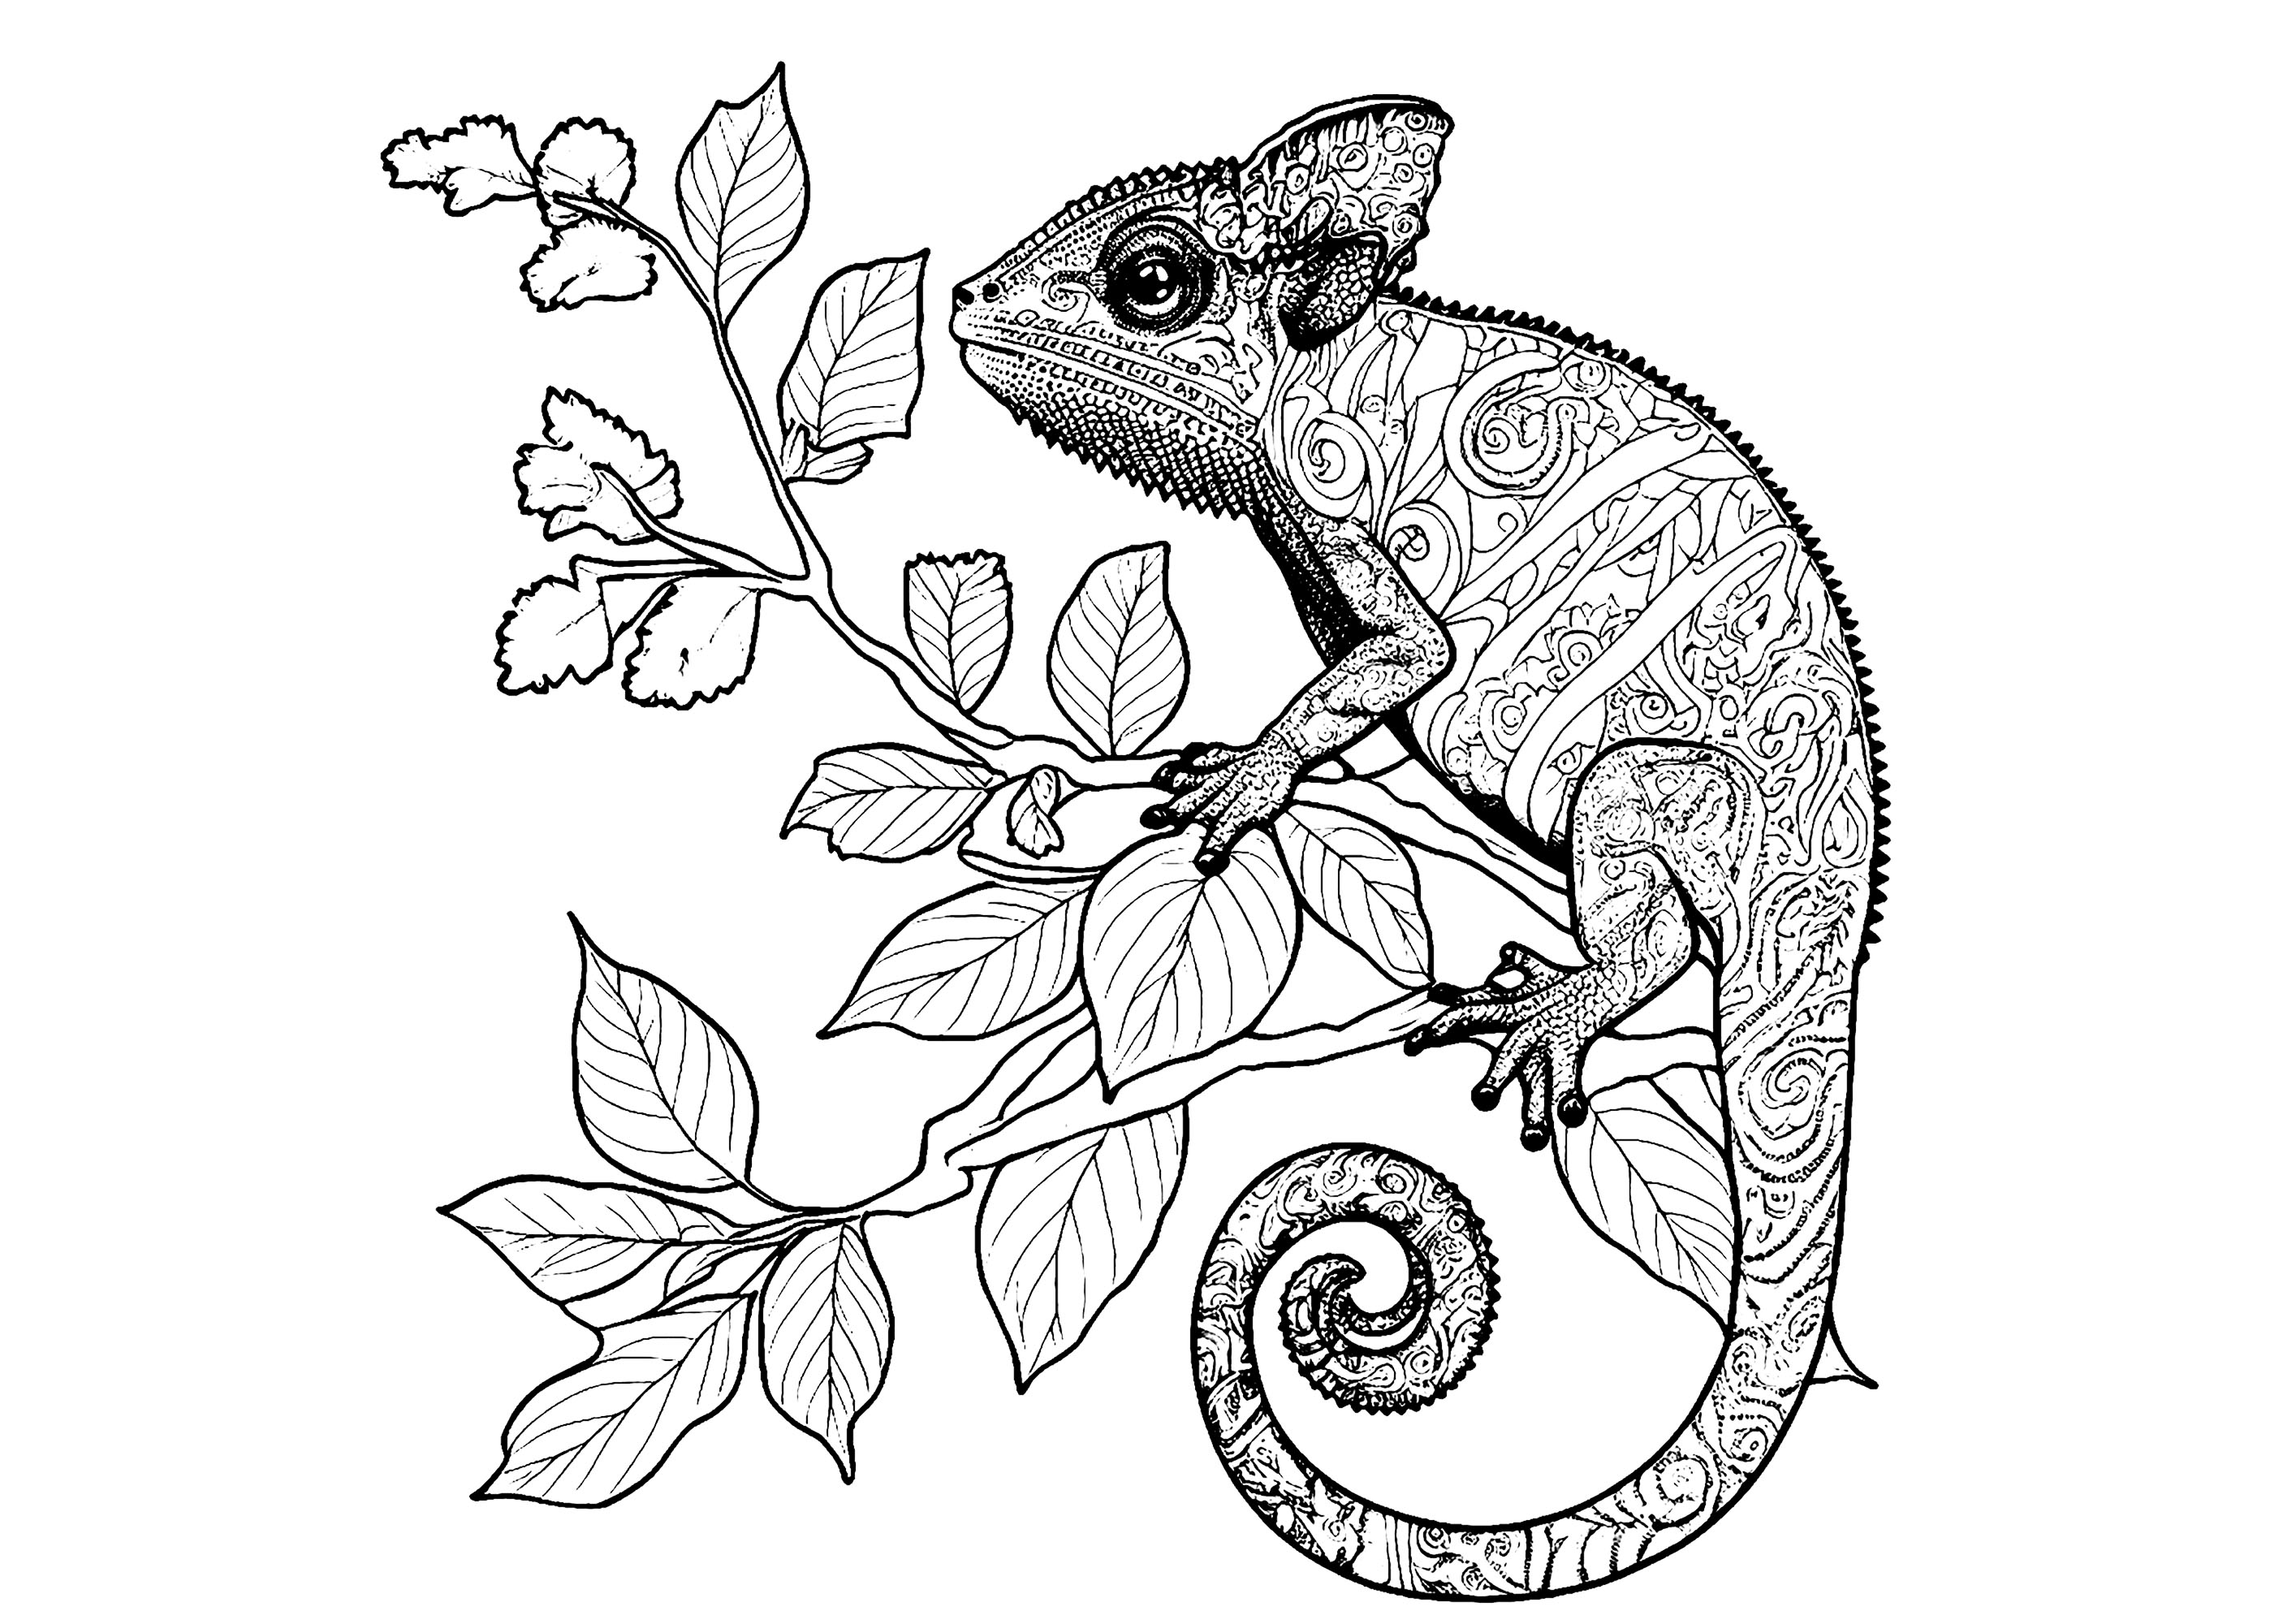 Coloreado de un camaleón lleno de detalles, posado sobre una rama en flor